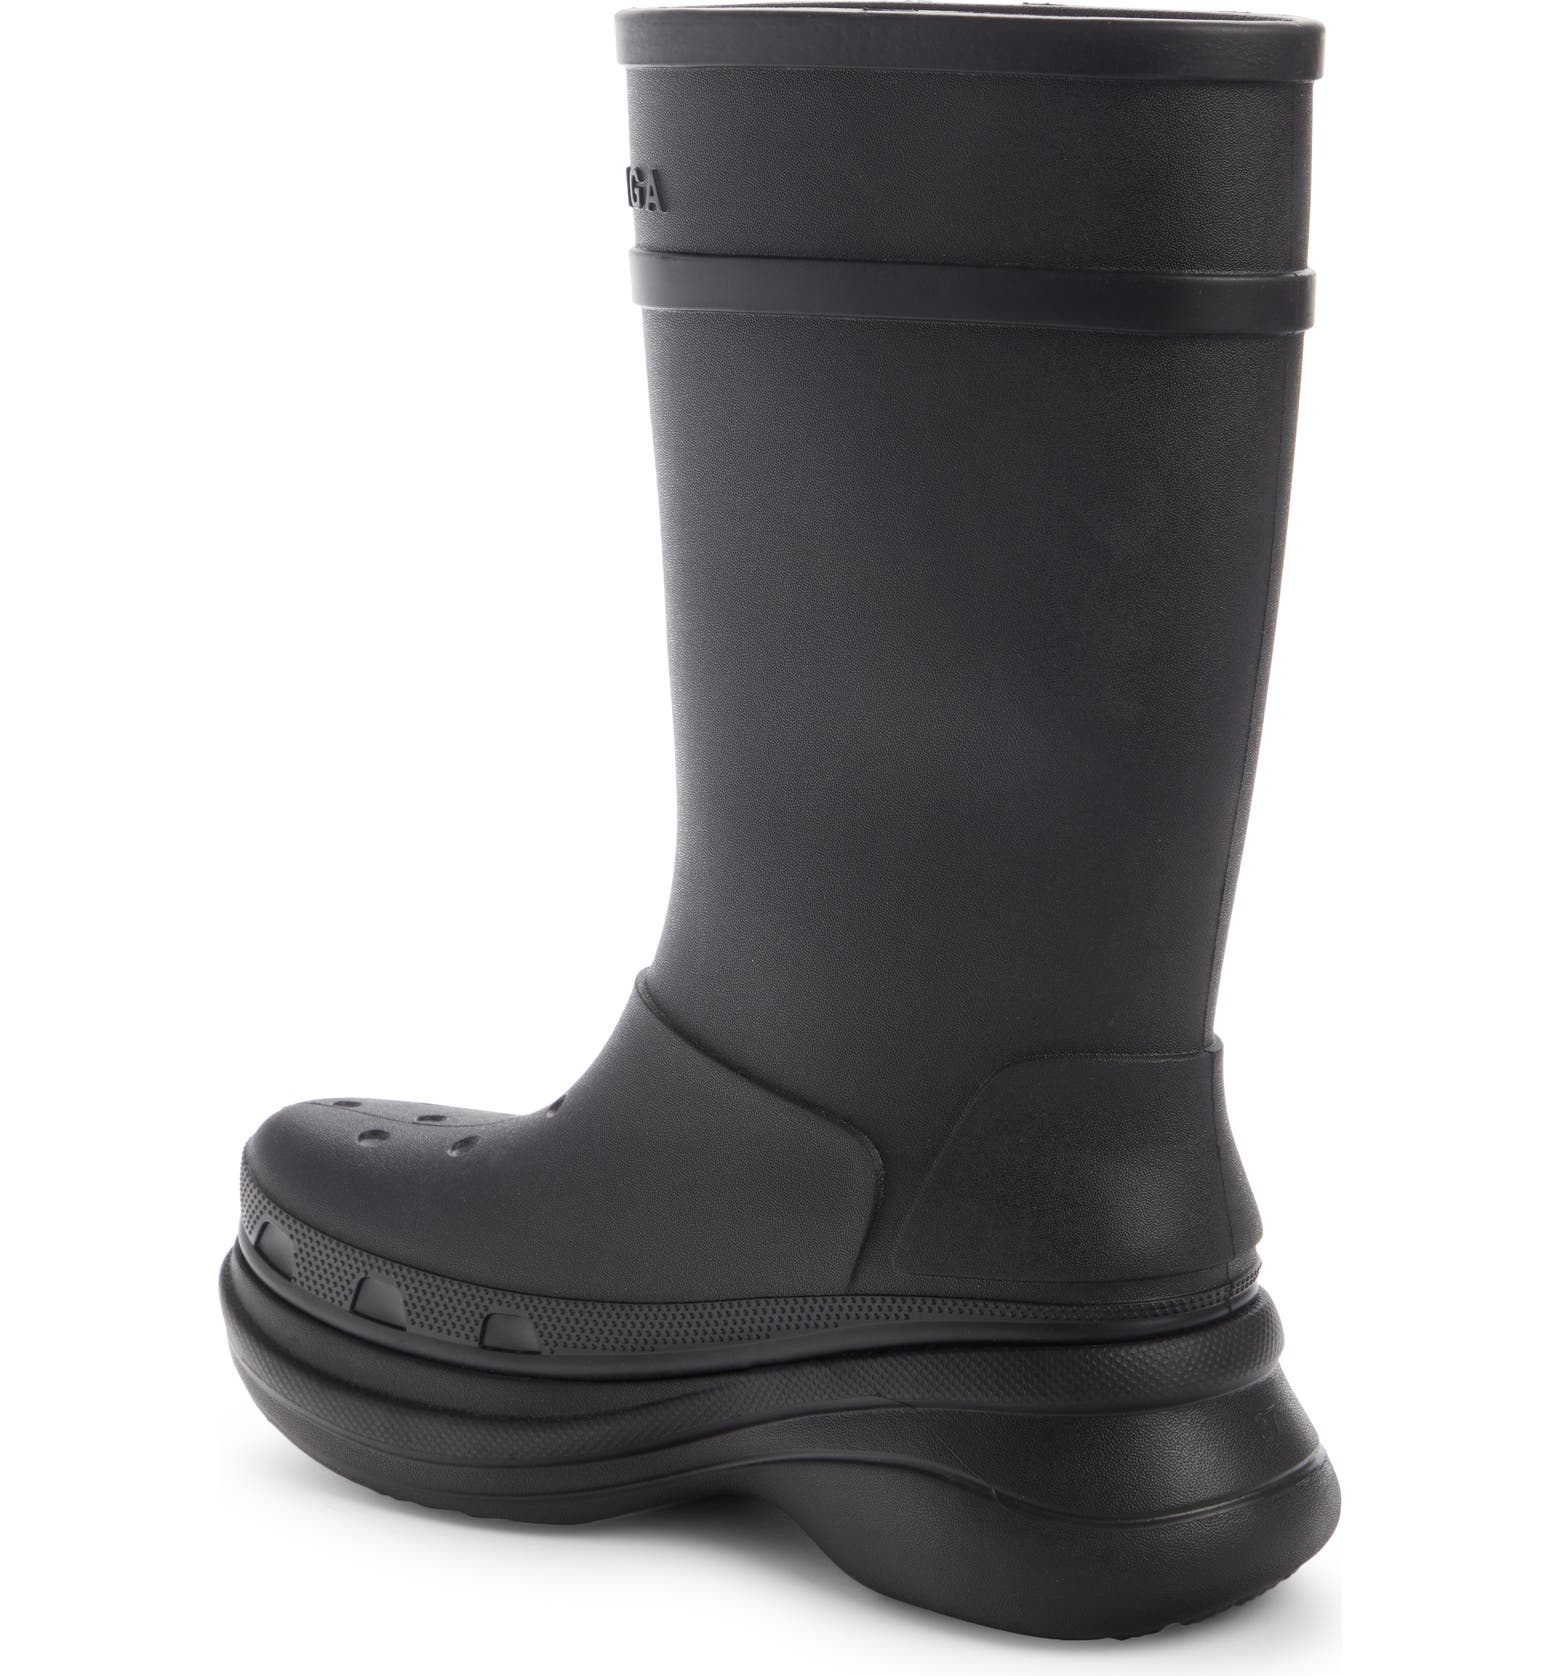 Balenciaga x CROCS Water Resistant Boot | Nordstrom